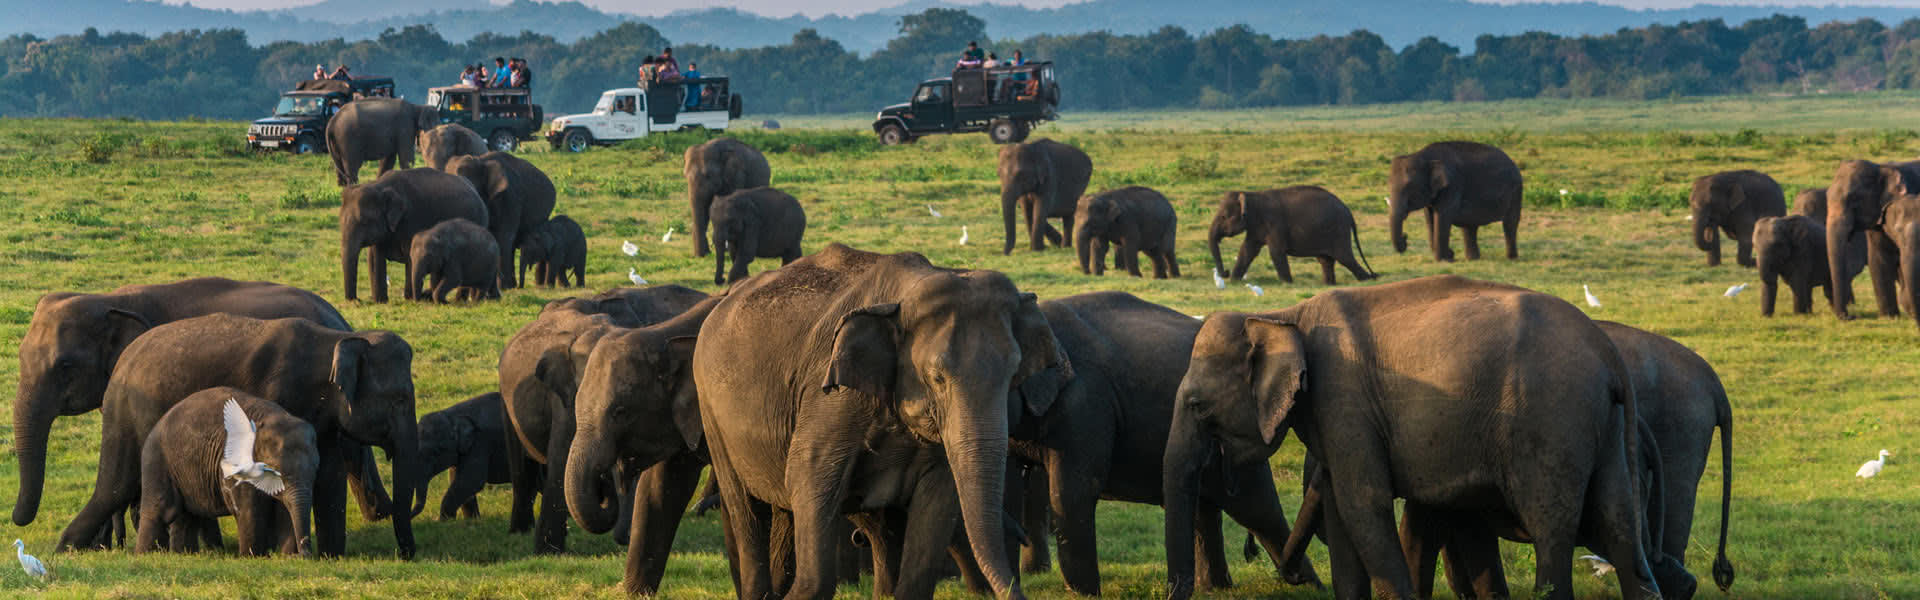 yala safari uganda